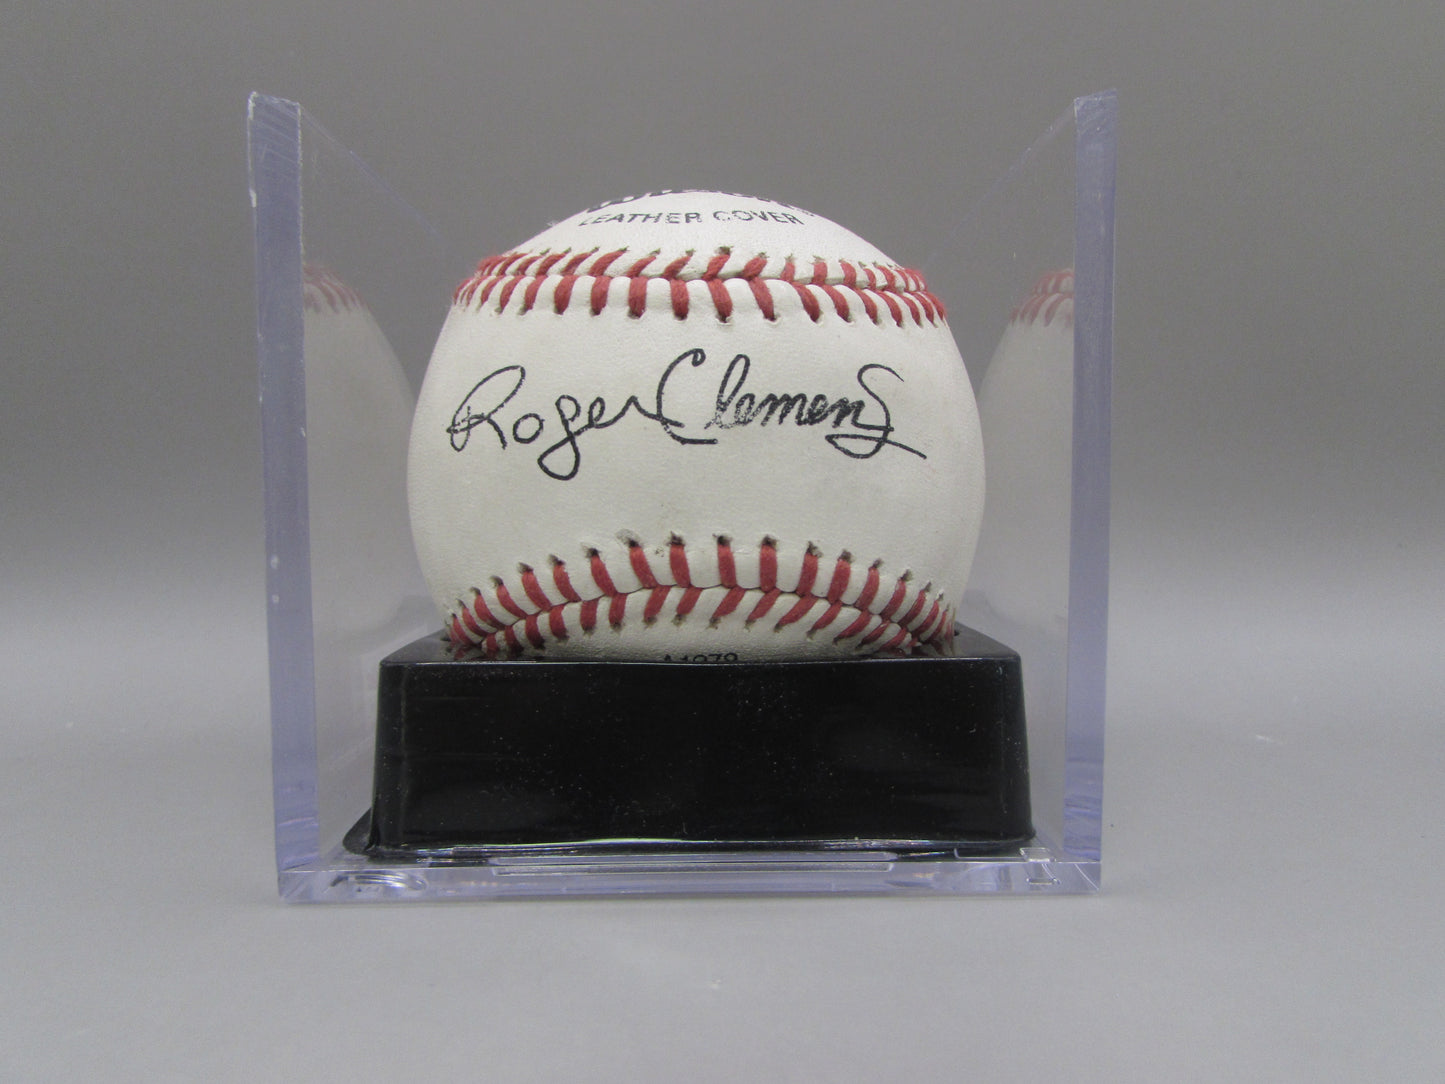 Roger Clemens signed baseball